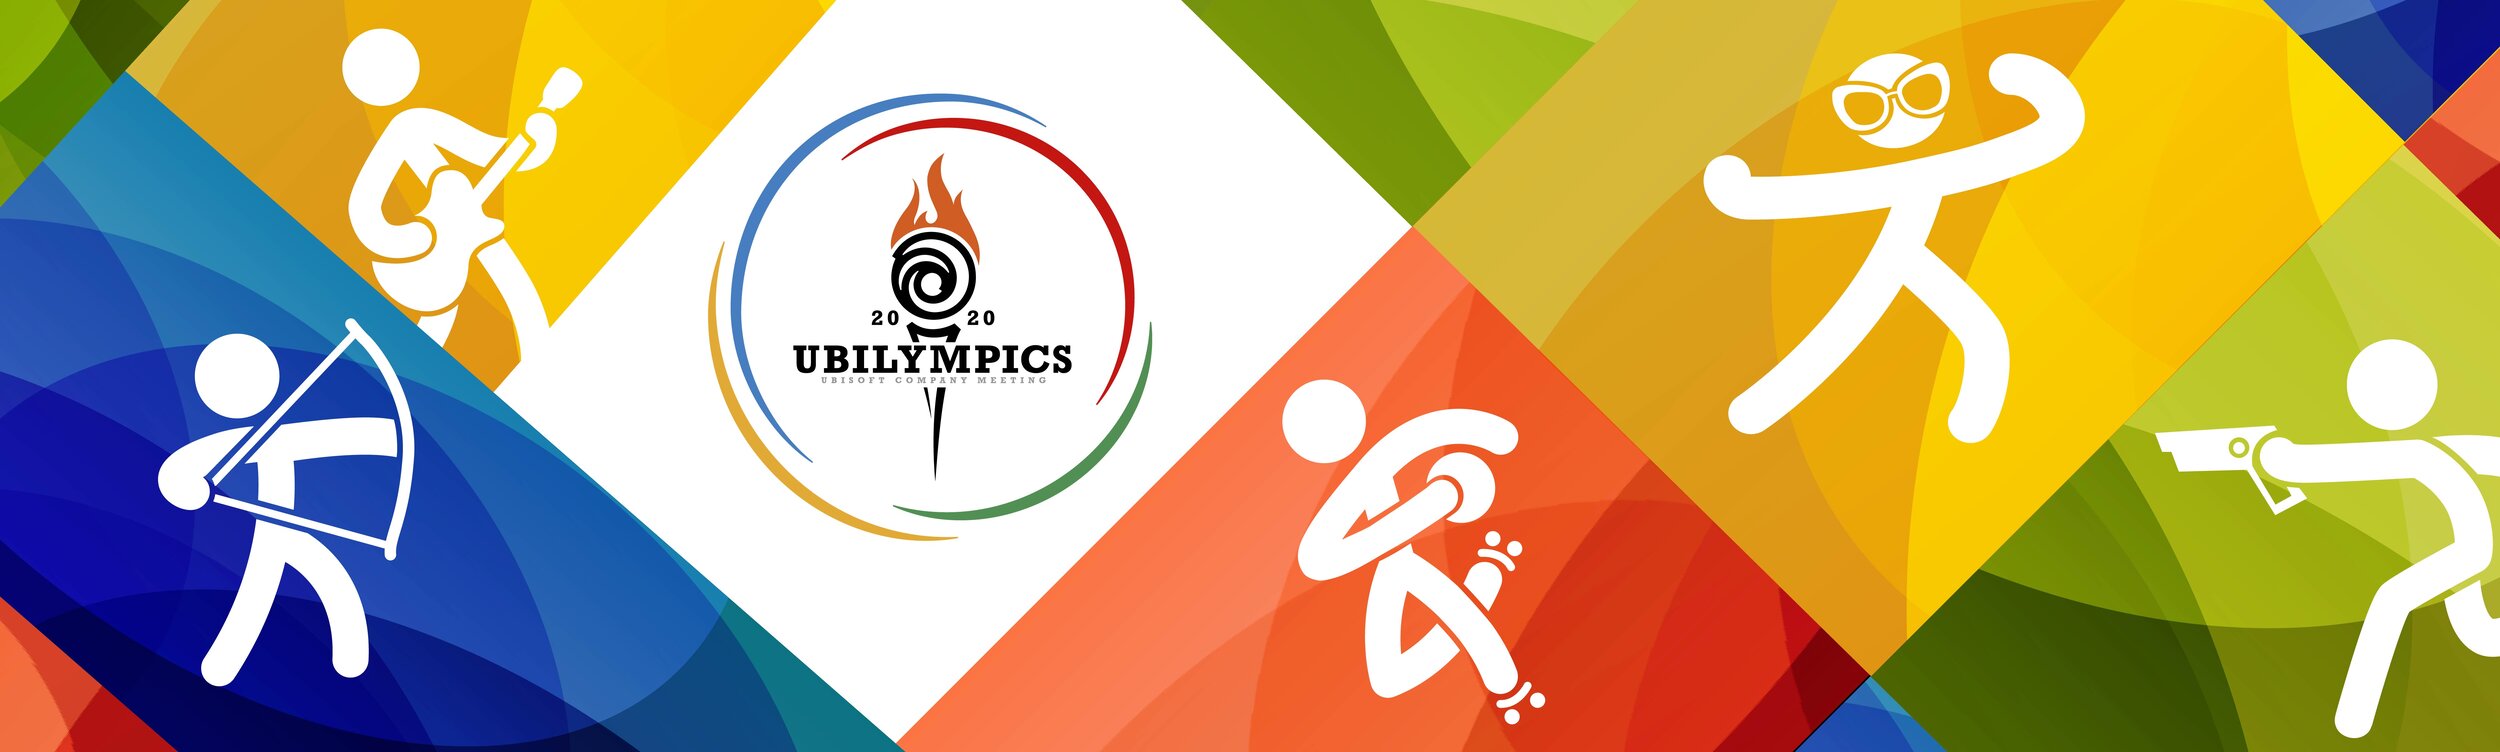 Ubilympics-icons-banner.jpg